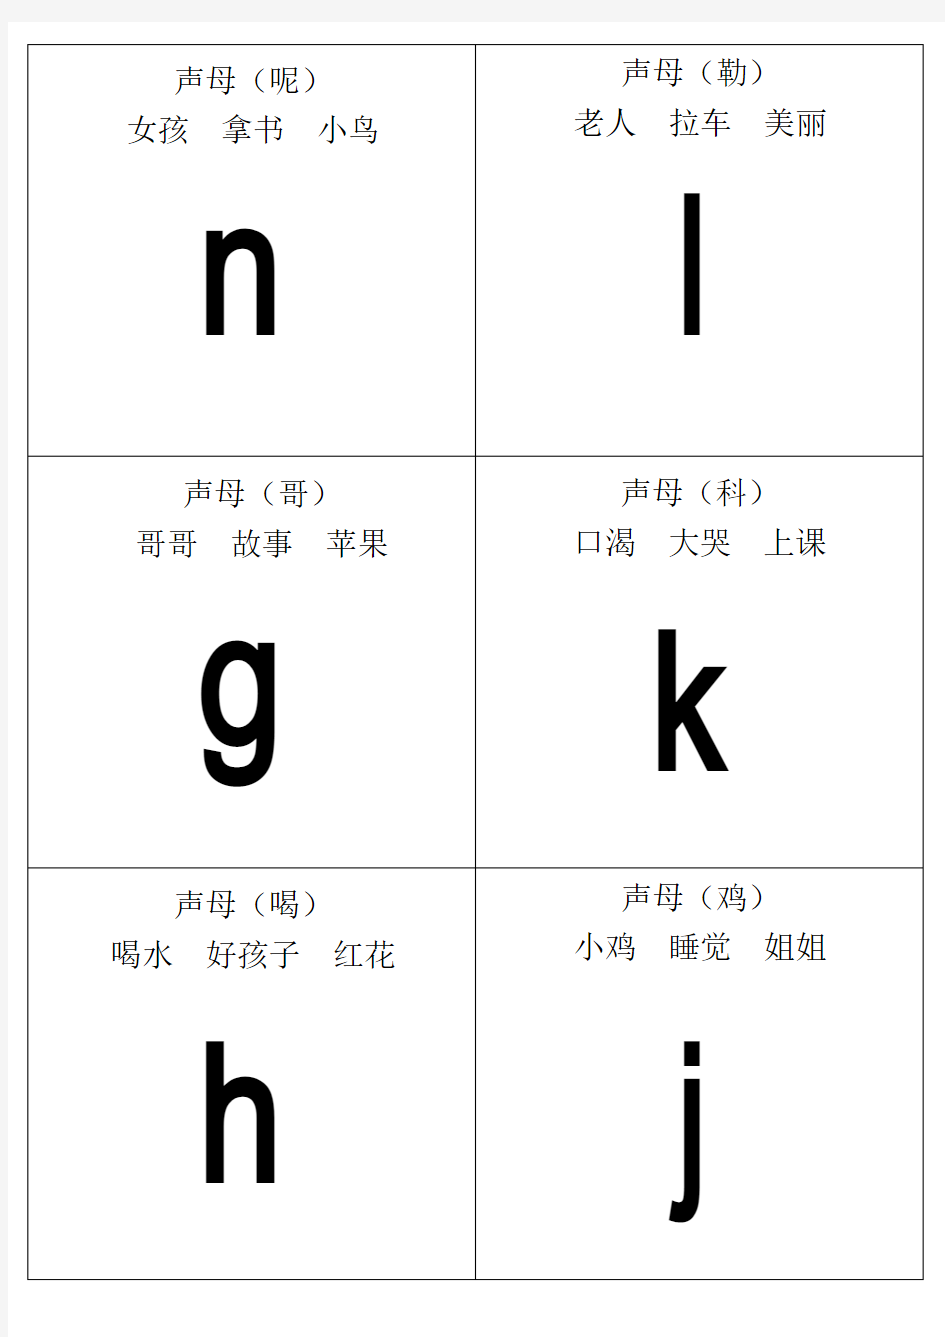 自己整理汉语拼音字母表卡片-读音(A4直接打印)资料讲解